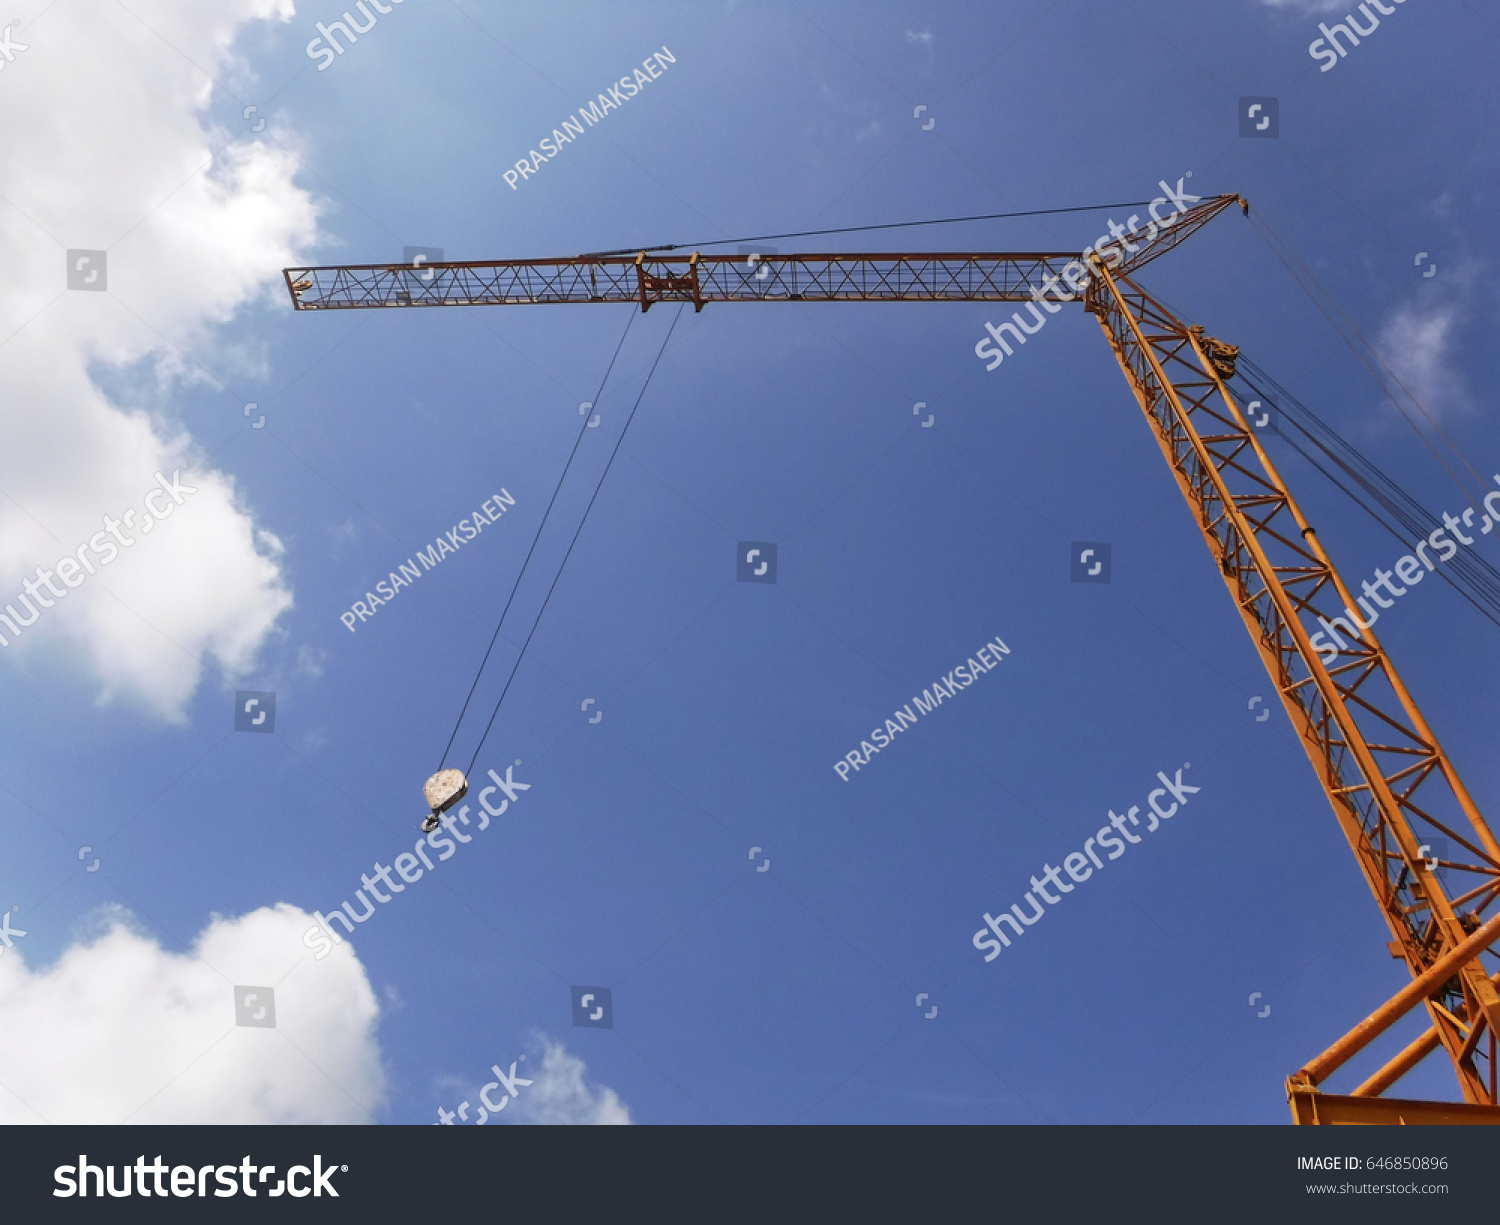 600 Tower swing crane Images, Stock Photos & Vectors | Shutterstock